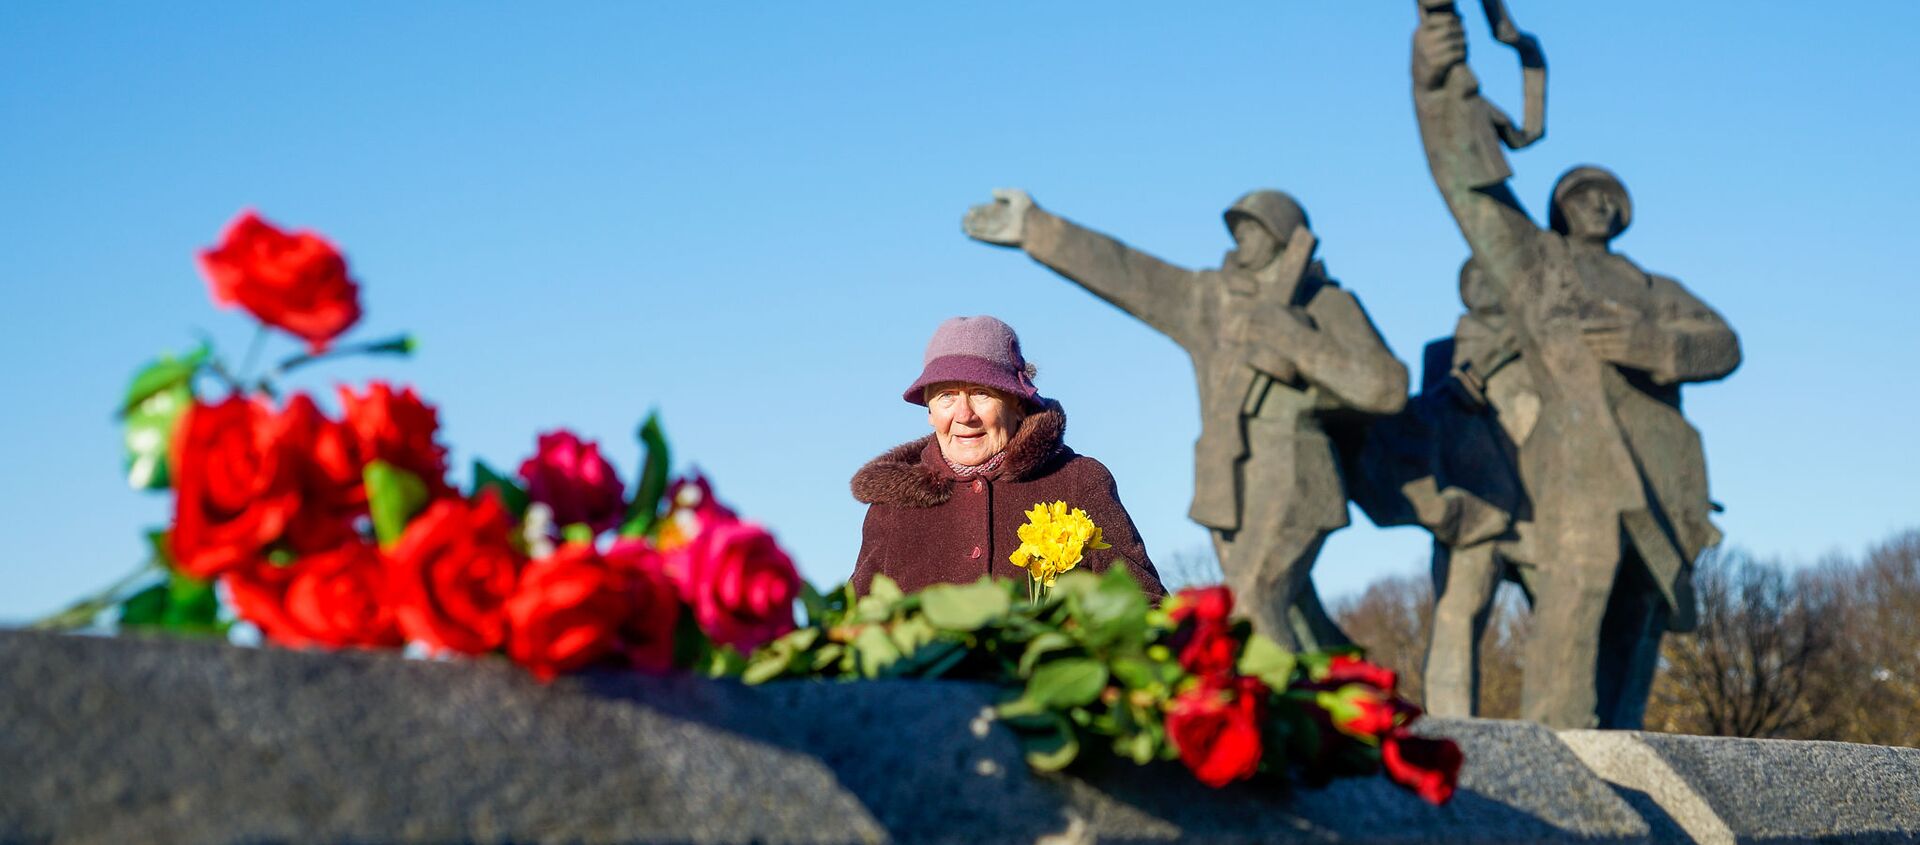 Церемония возложения венков и цветов к памятнику Освободителям Риги в Пардаугаве, 22 февраля 2019 года - Sputnik Latvija, 1920, 23.02.2019